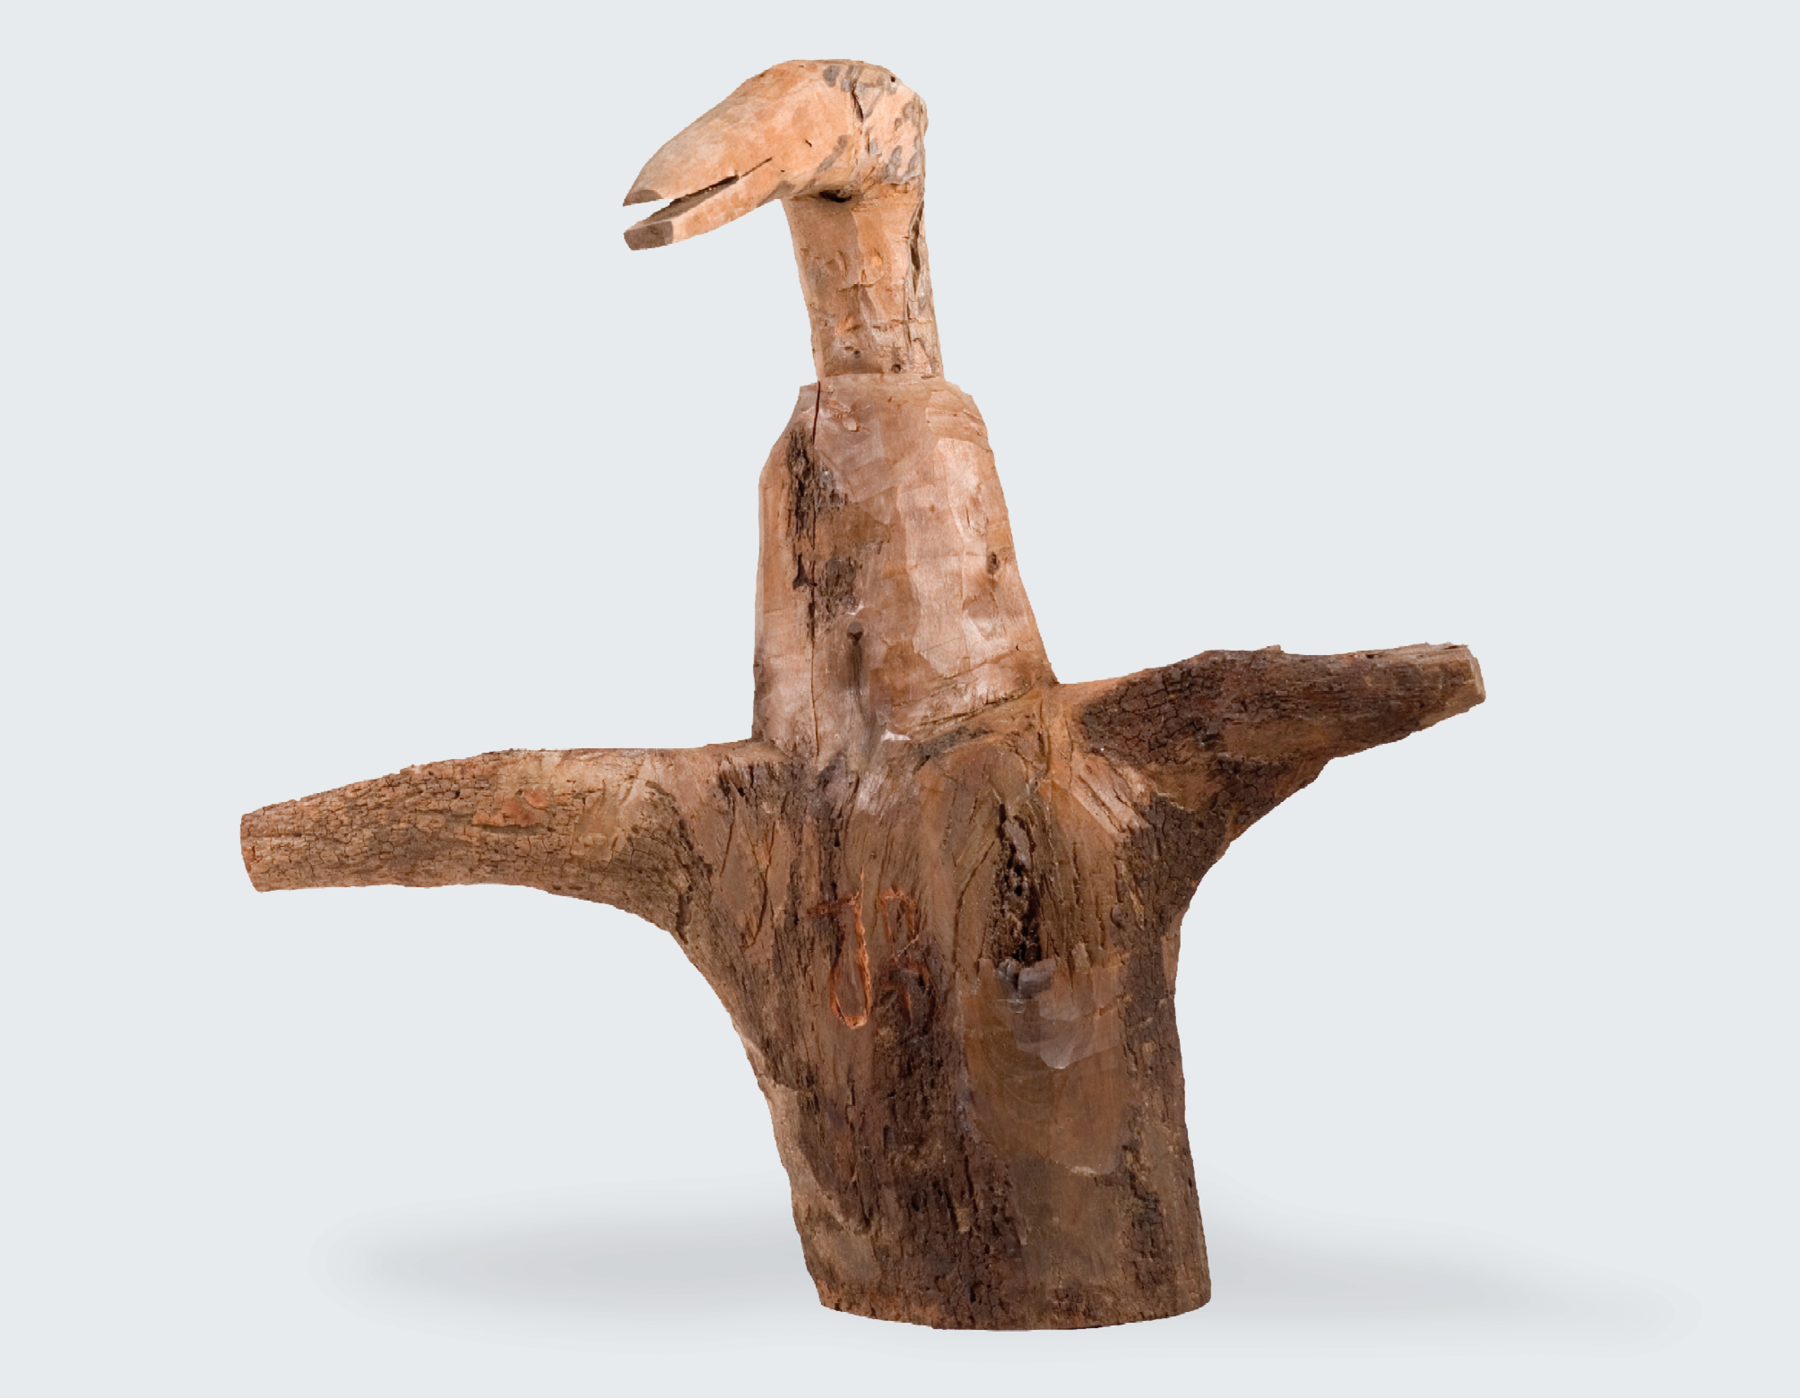 Fotografia. Pedaço de um tronco de árvore com galhos esculpido em forma de uma ave de asas curtas abertas e pescoço e bico longos.